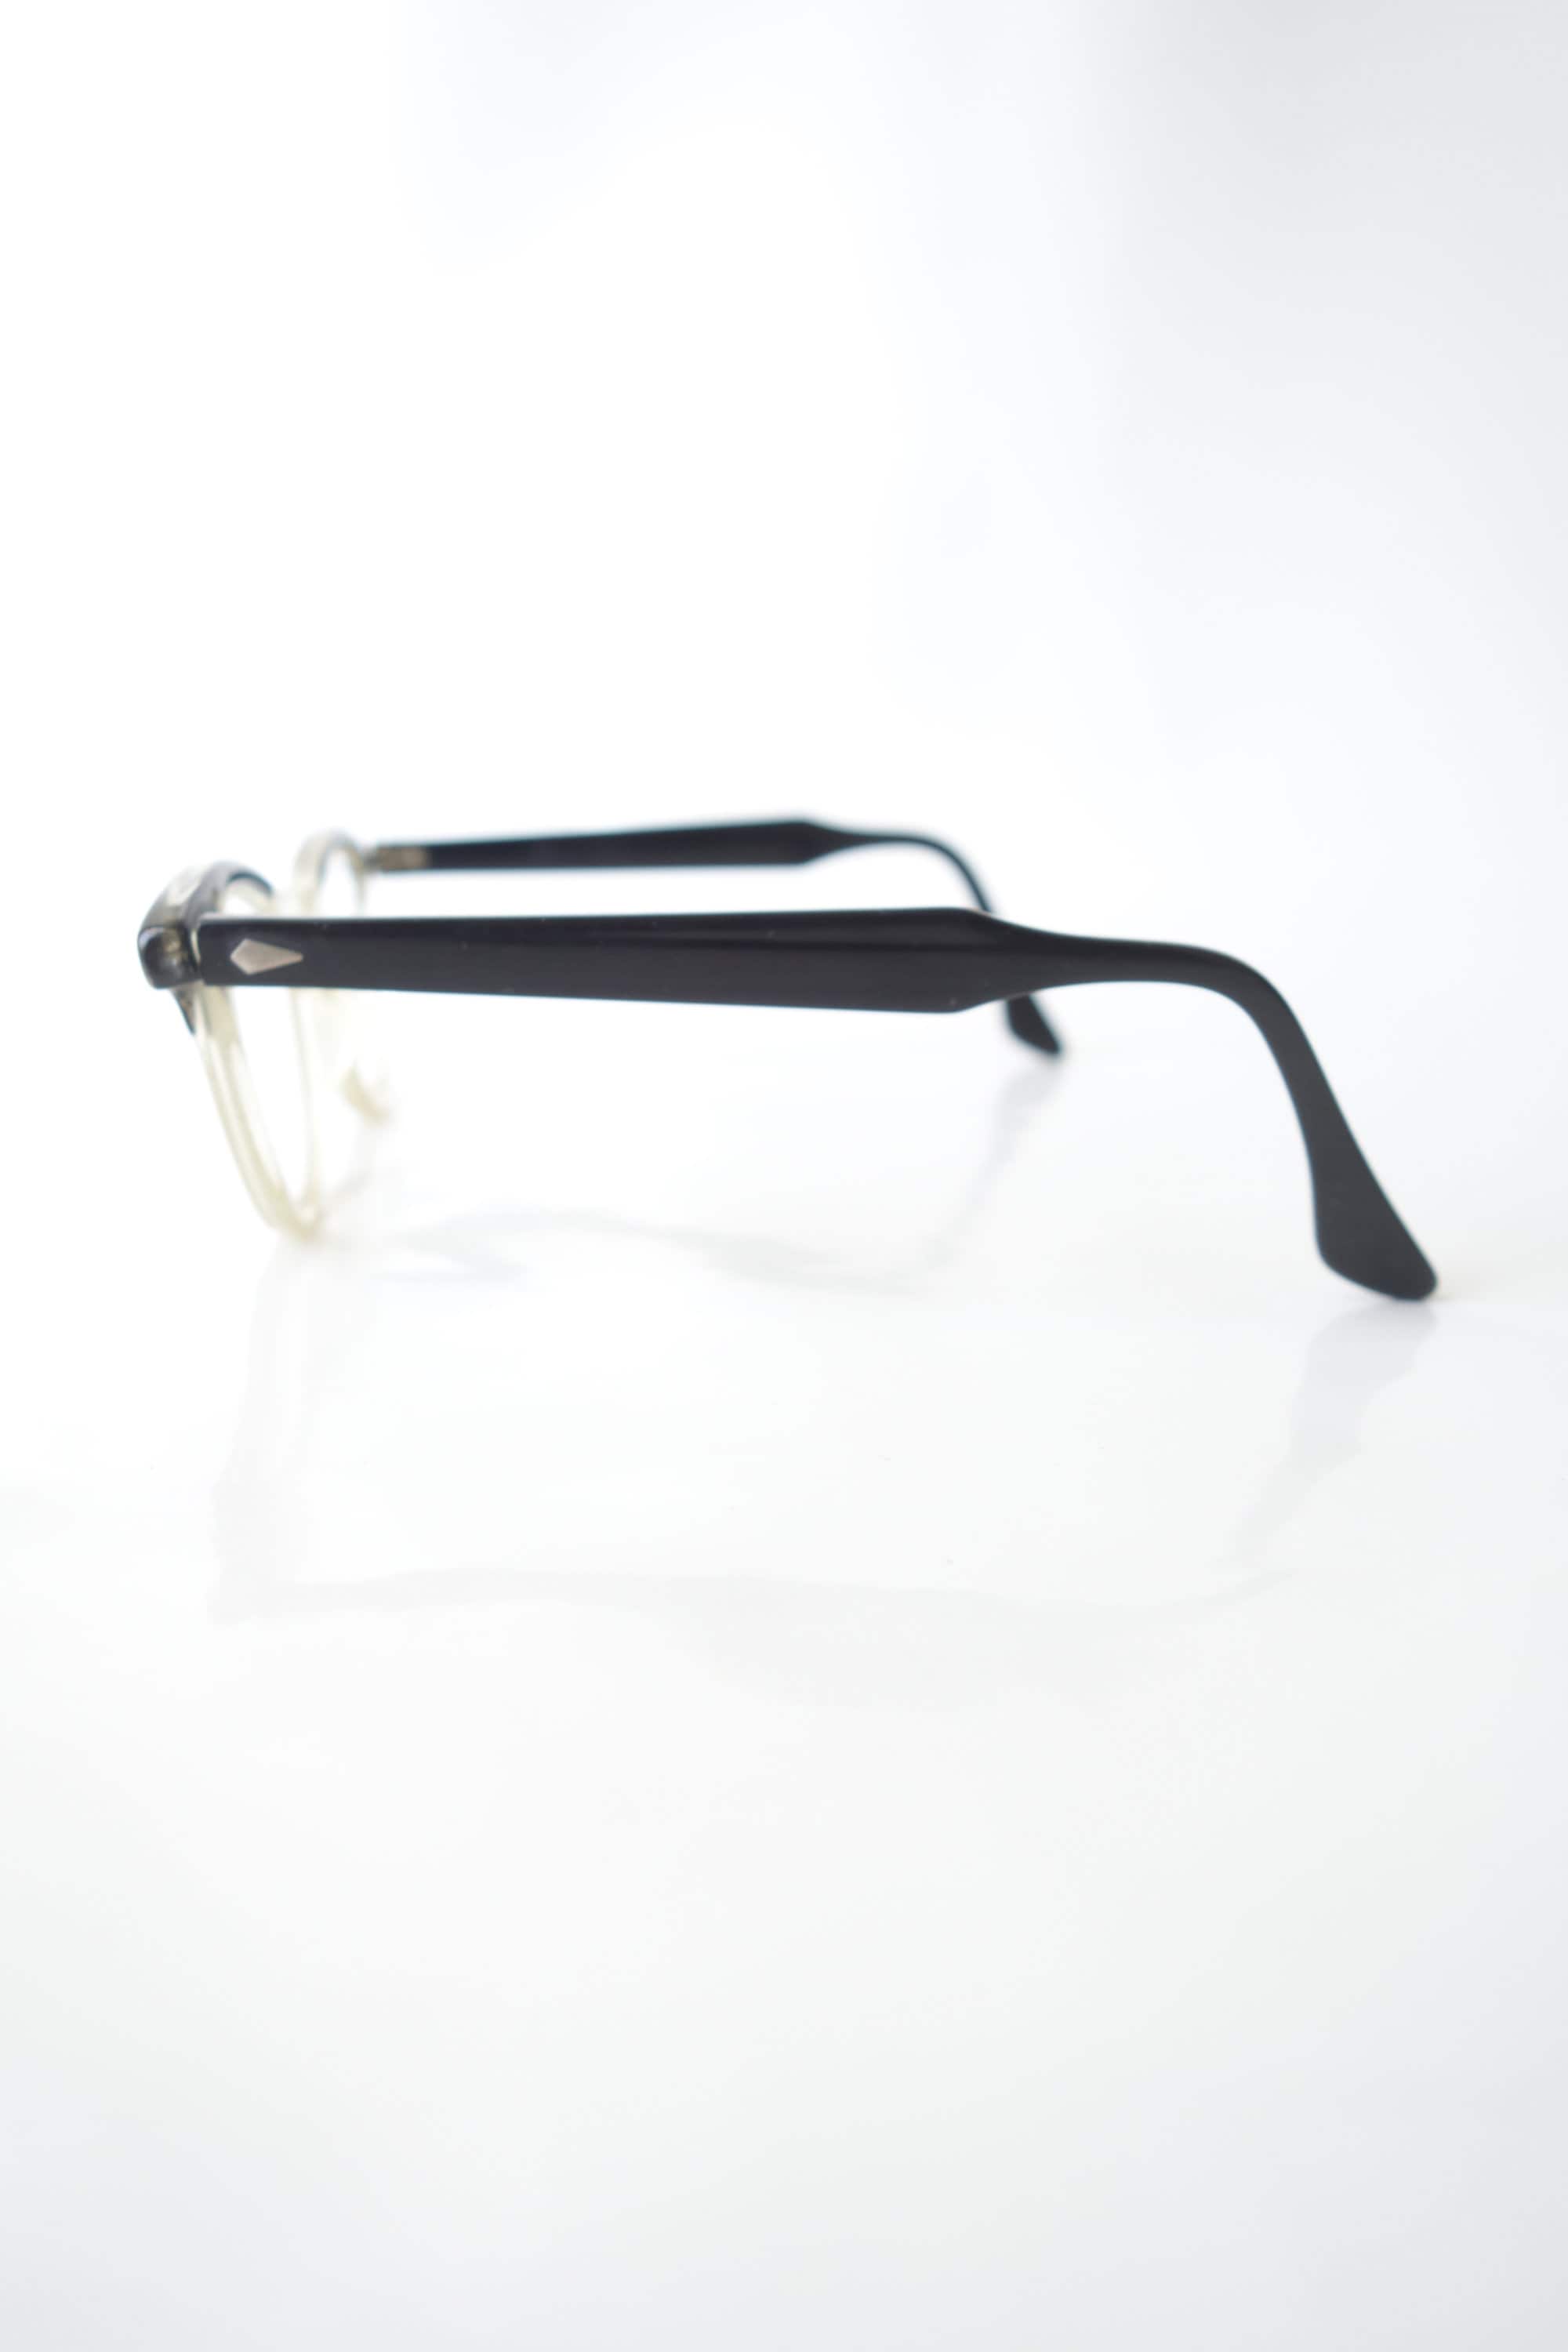 Tart Optical Leading Liz Glossy Black Eyeglasses Tart Arnel | Etsy